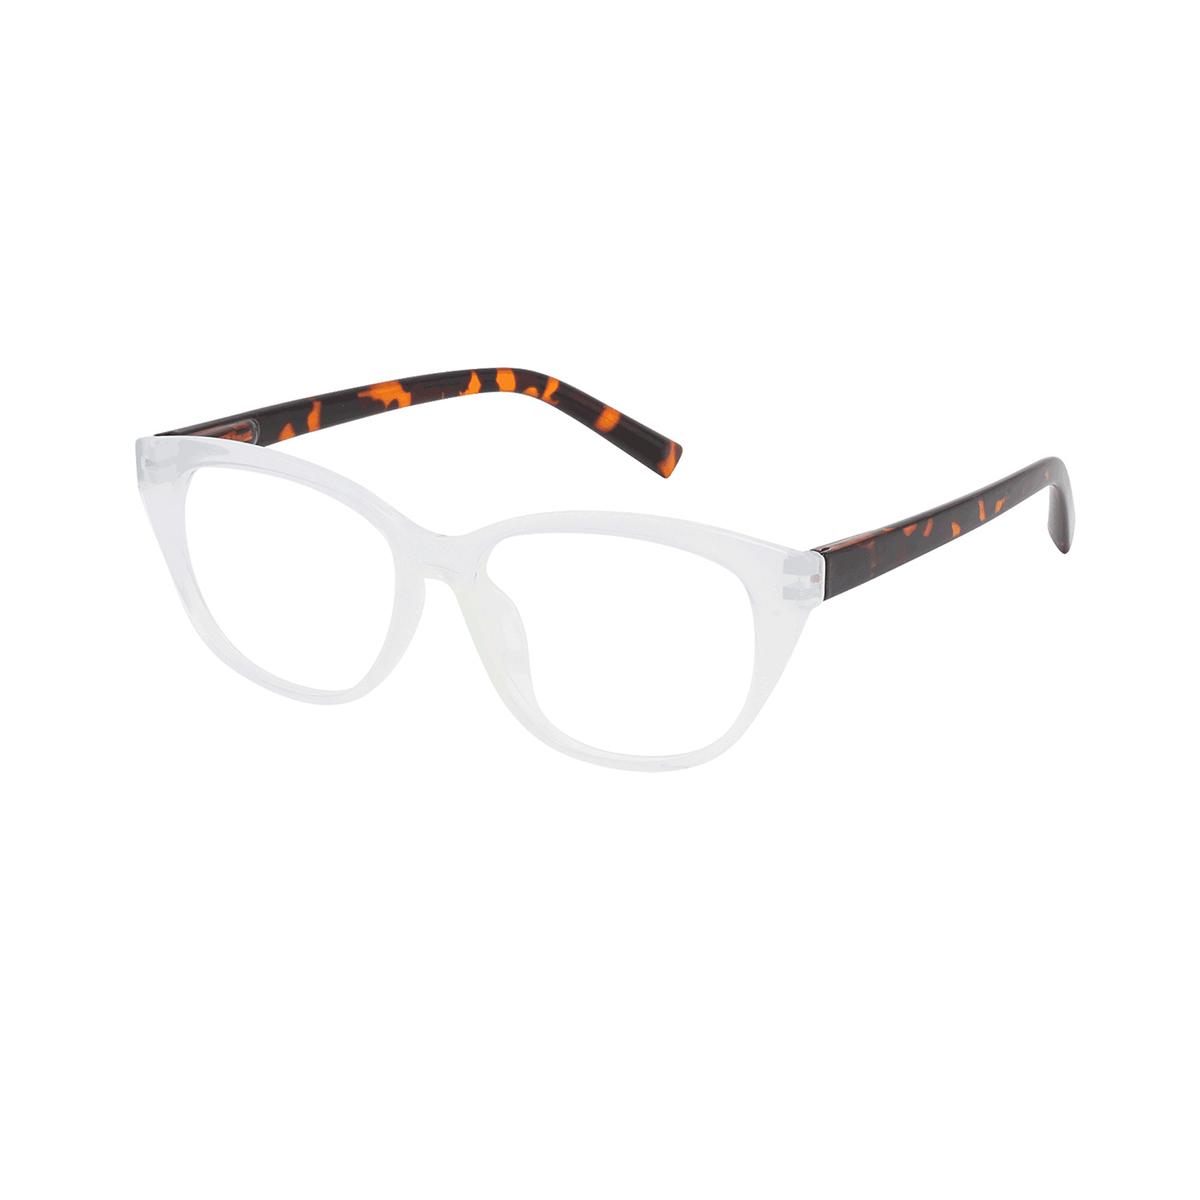 Burr - Cat-eye Demi-Transparent Reading Glasses for Women